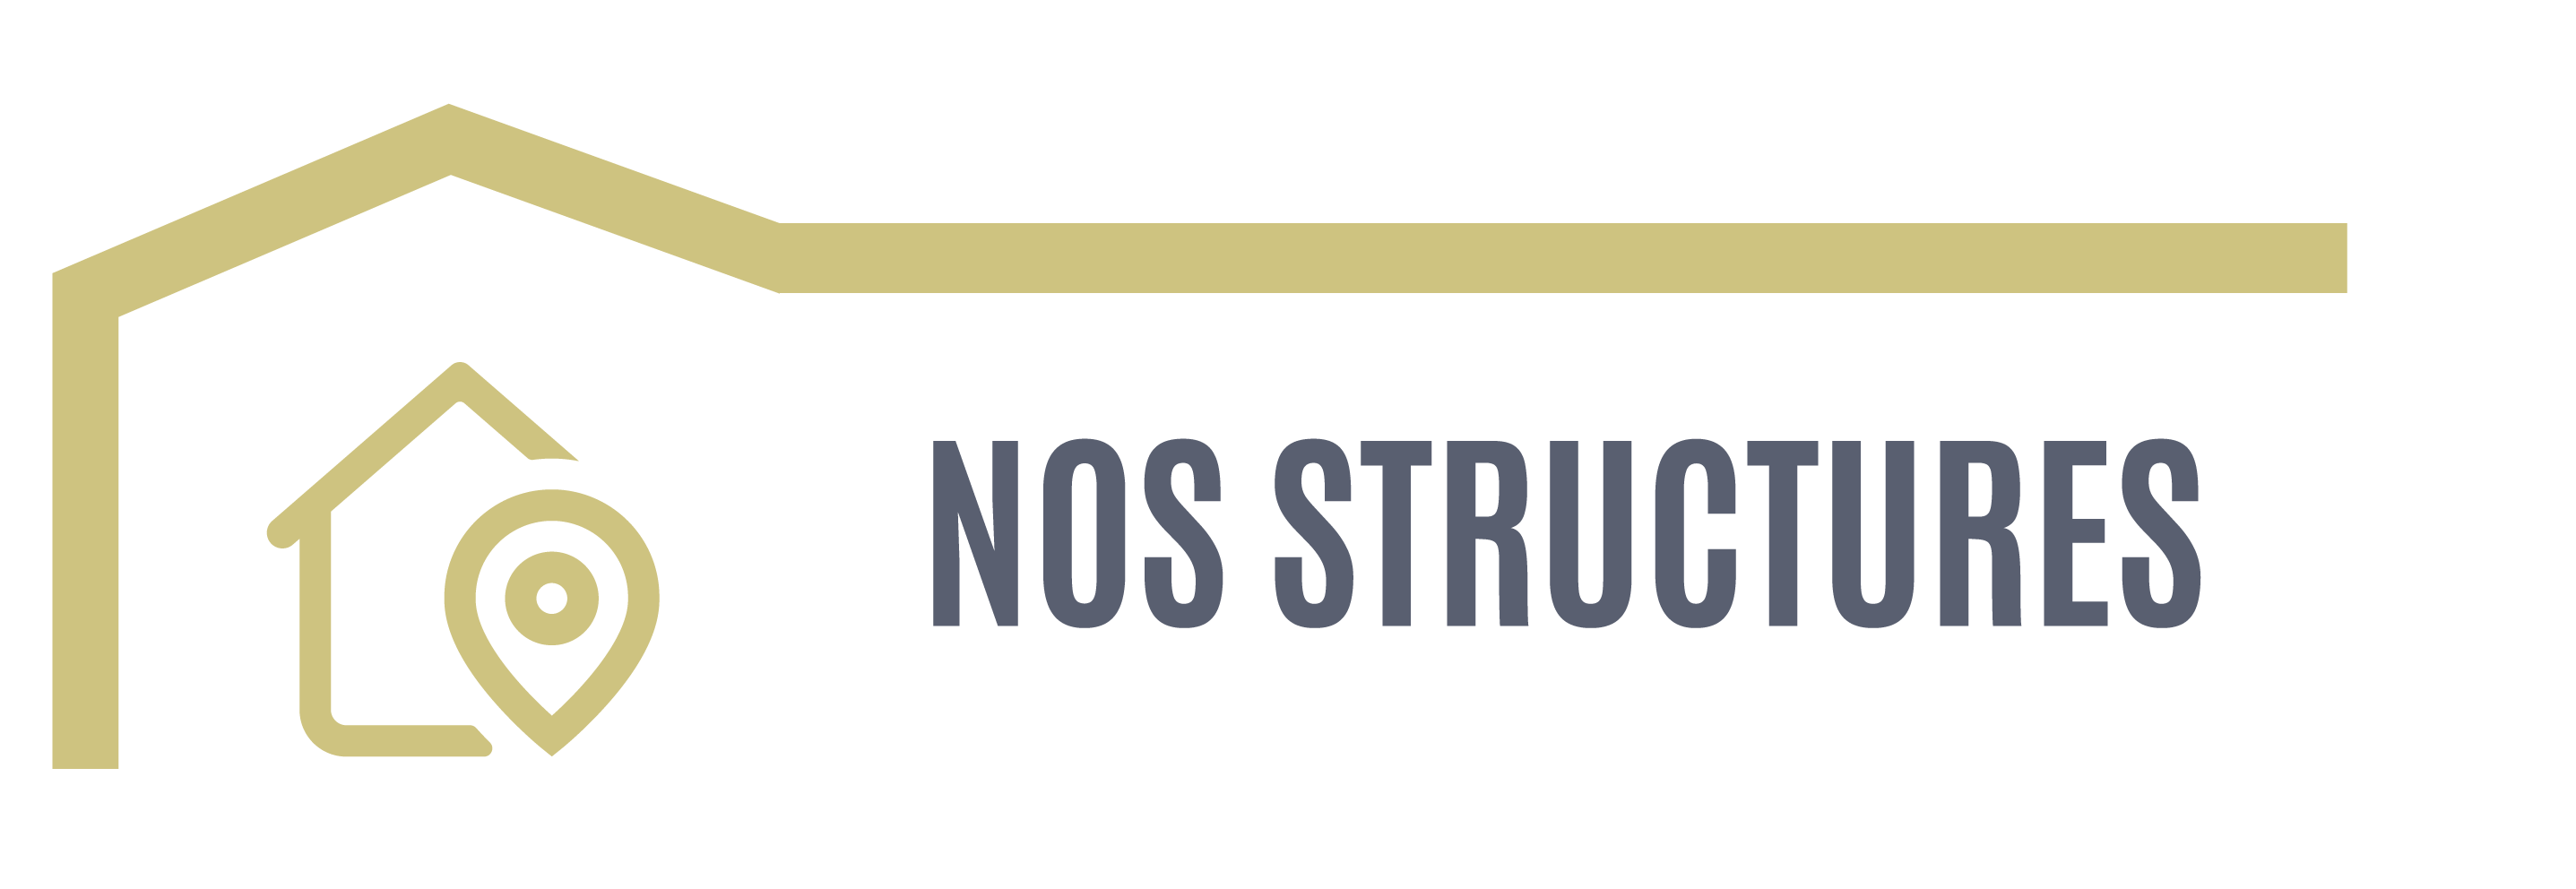 Bouton Nos structures - lien vers la page Structures